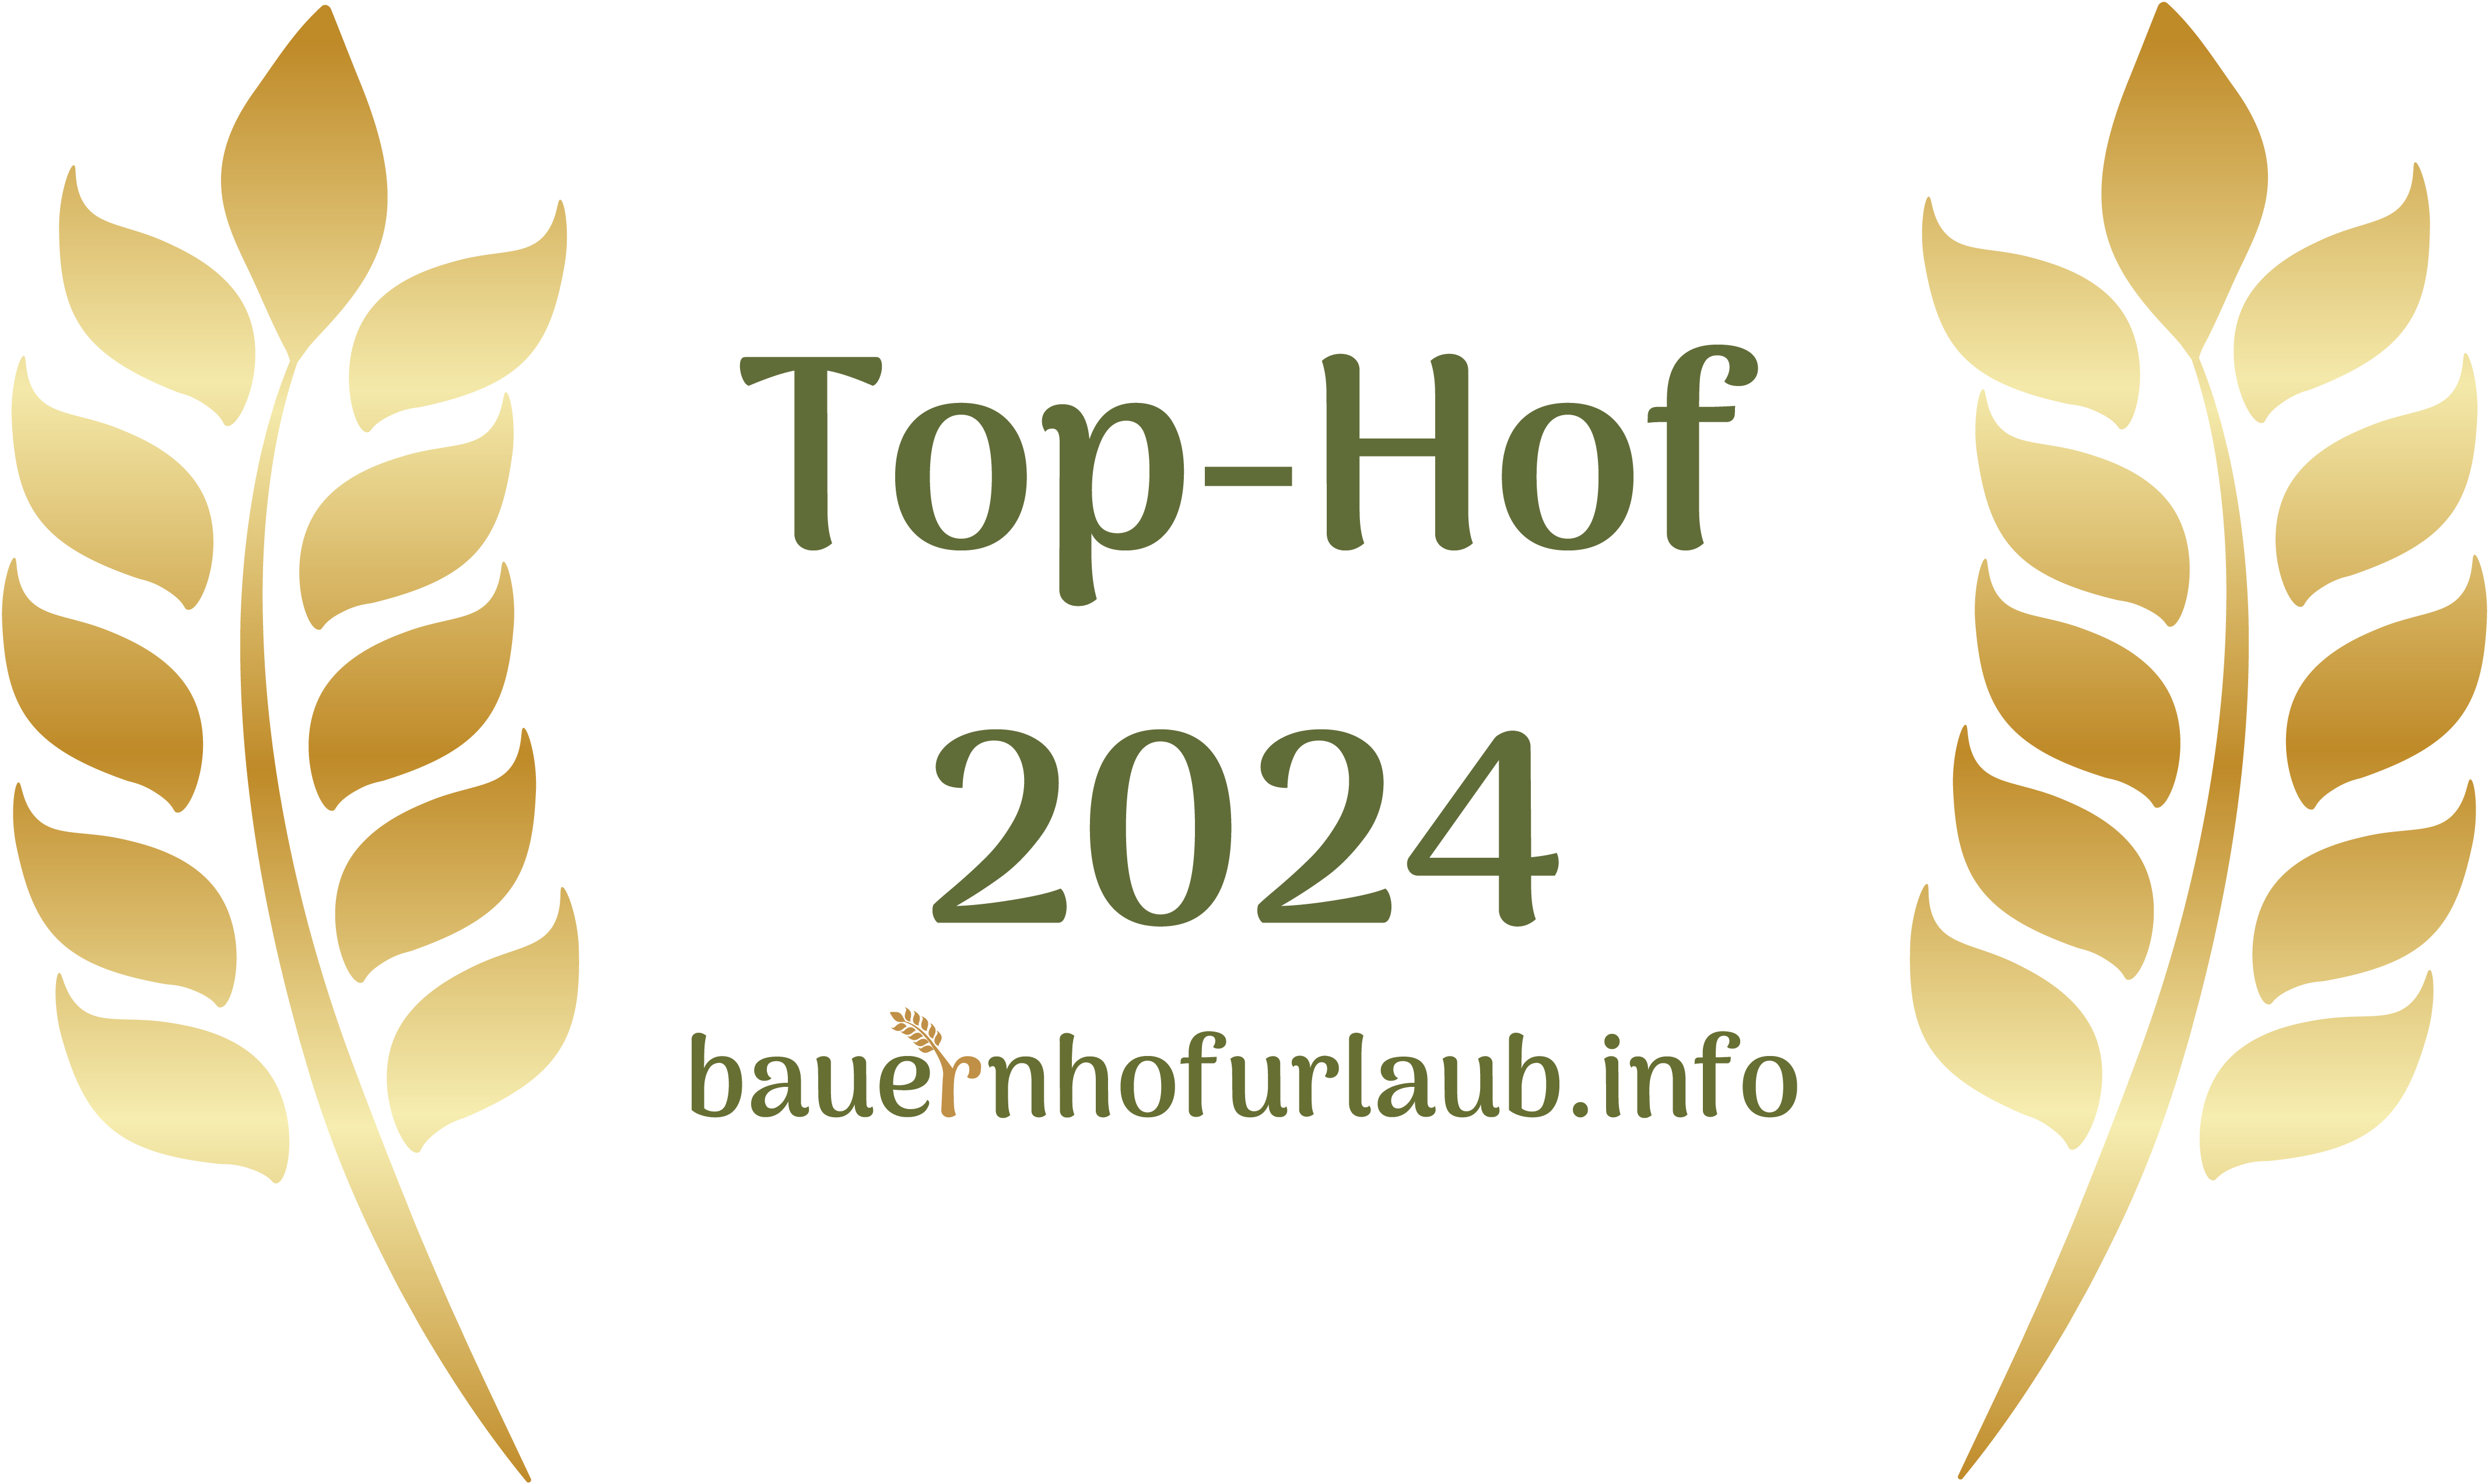 bauernhofurlaub.info logo round